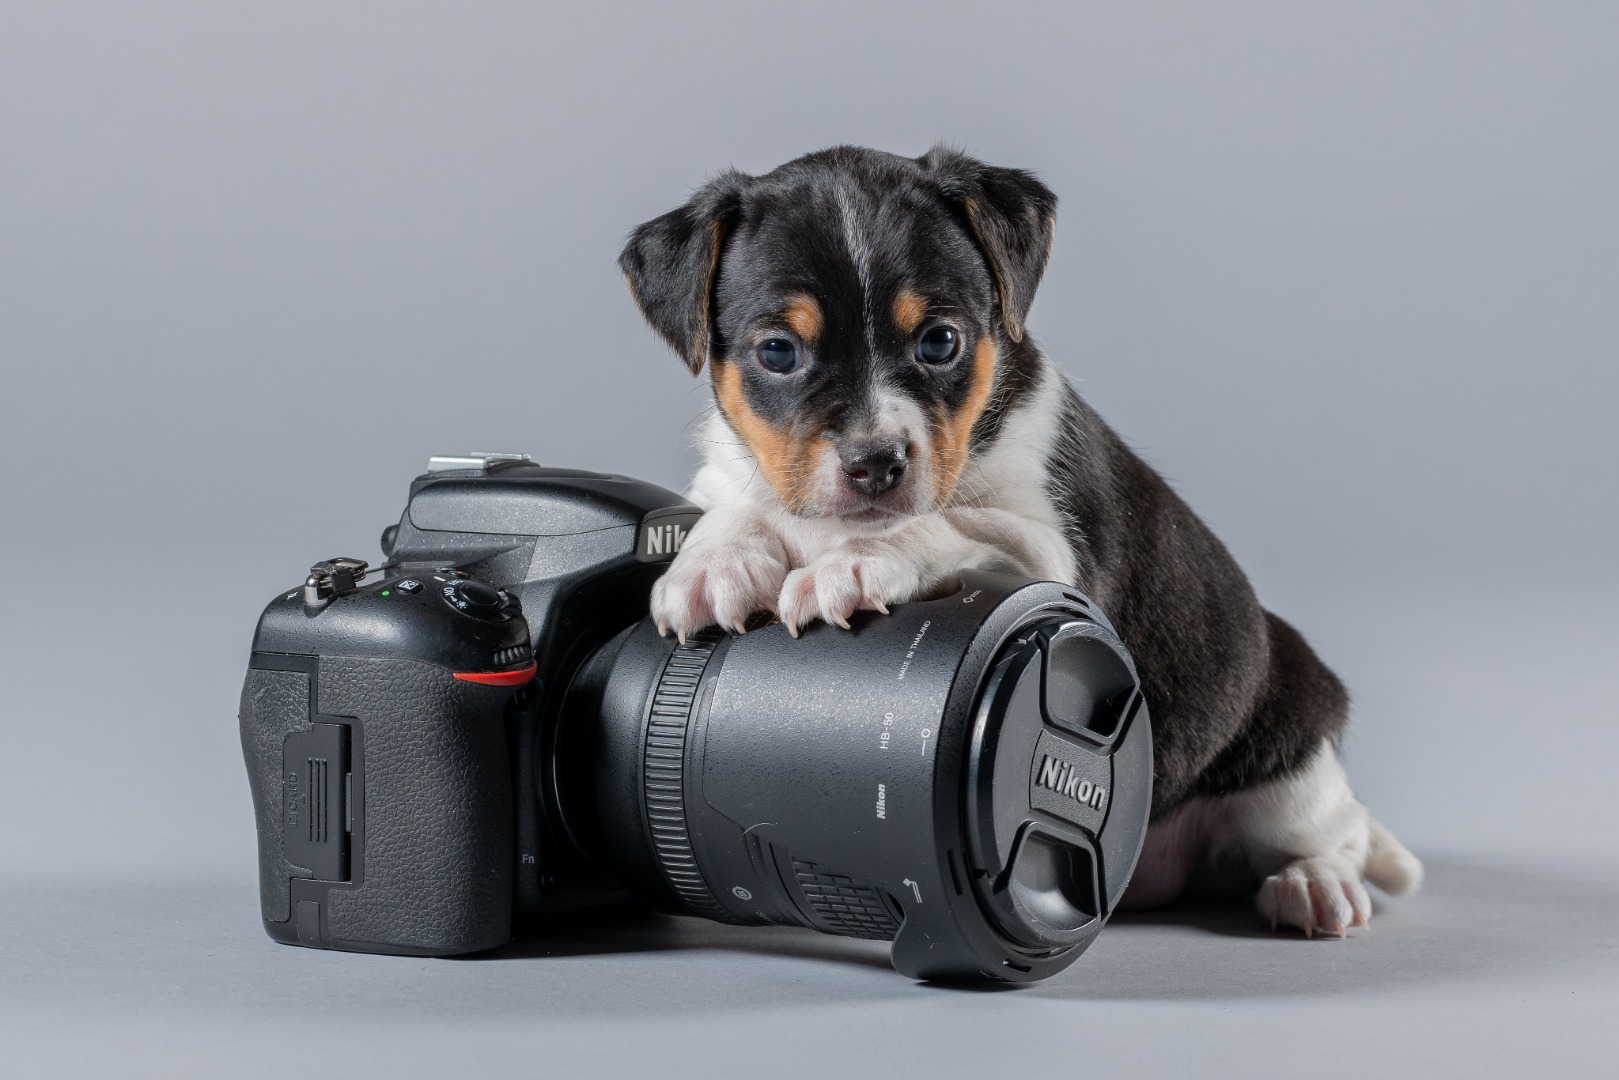 Sevimli dostlarımız köpekler, kameraları neden sevmez?